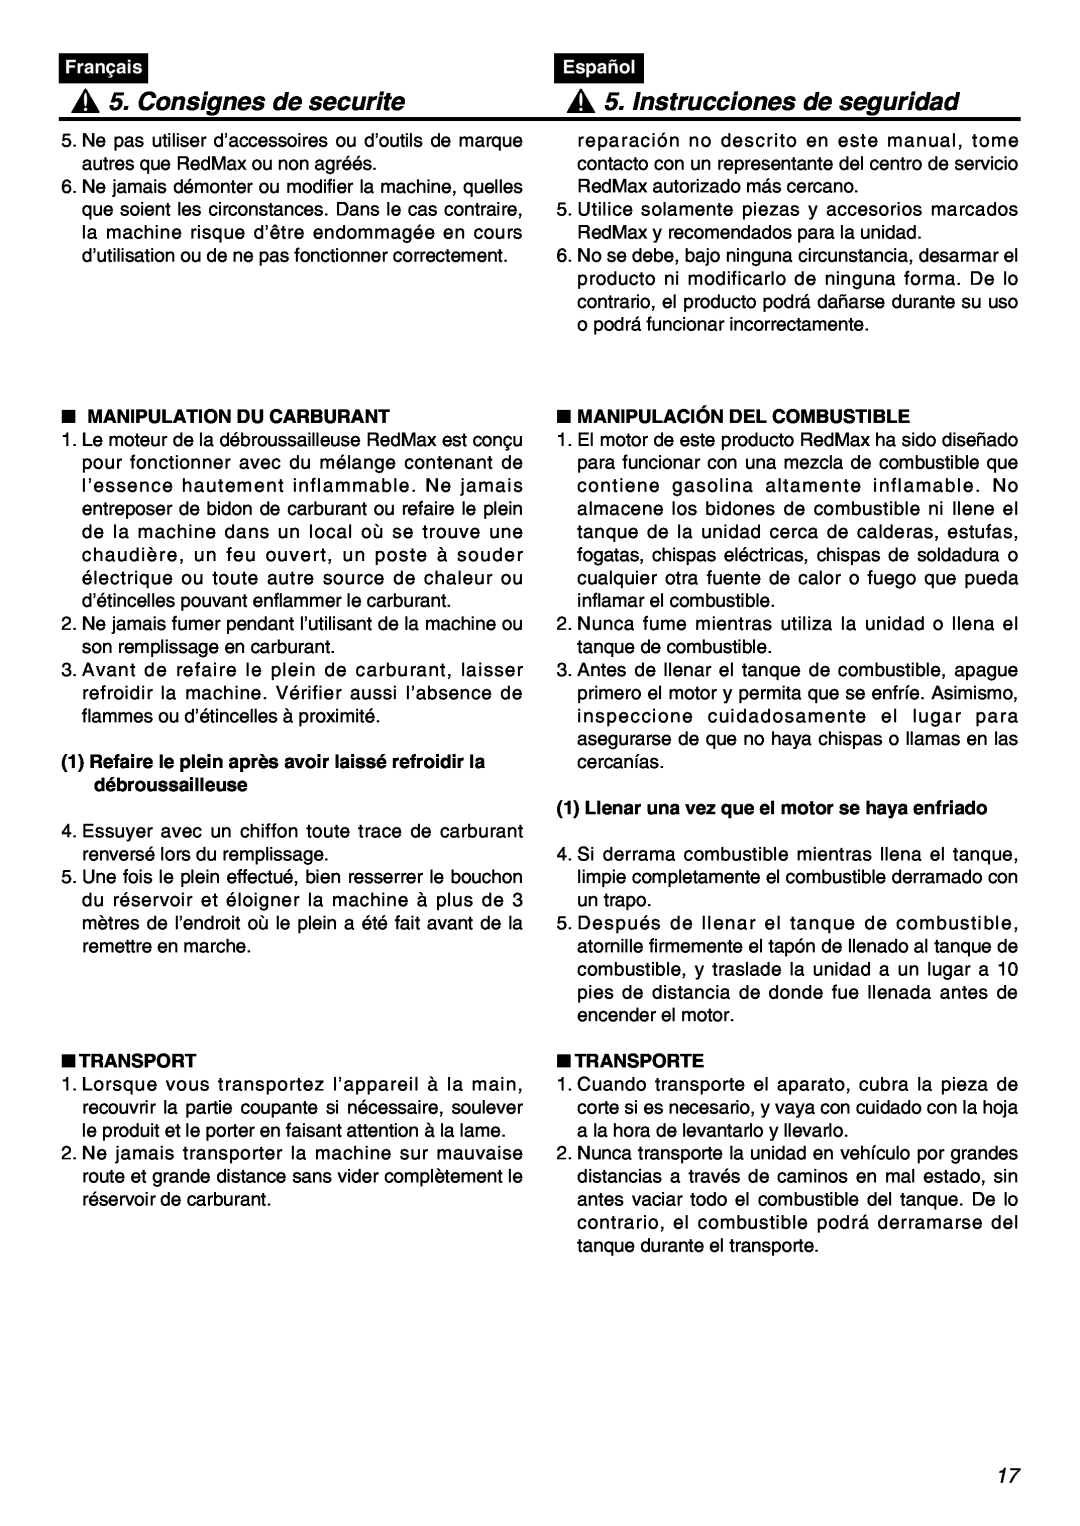 RedMax BCZ2401S-CA manual Consignes de securite, Instrucciones de seguridad, Français, Español, Manipulation Du Carburant 